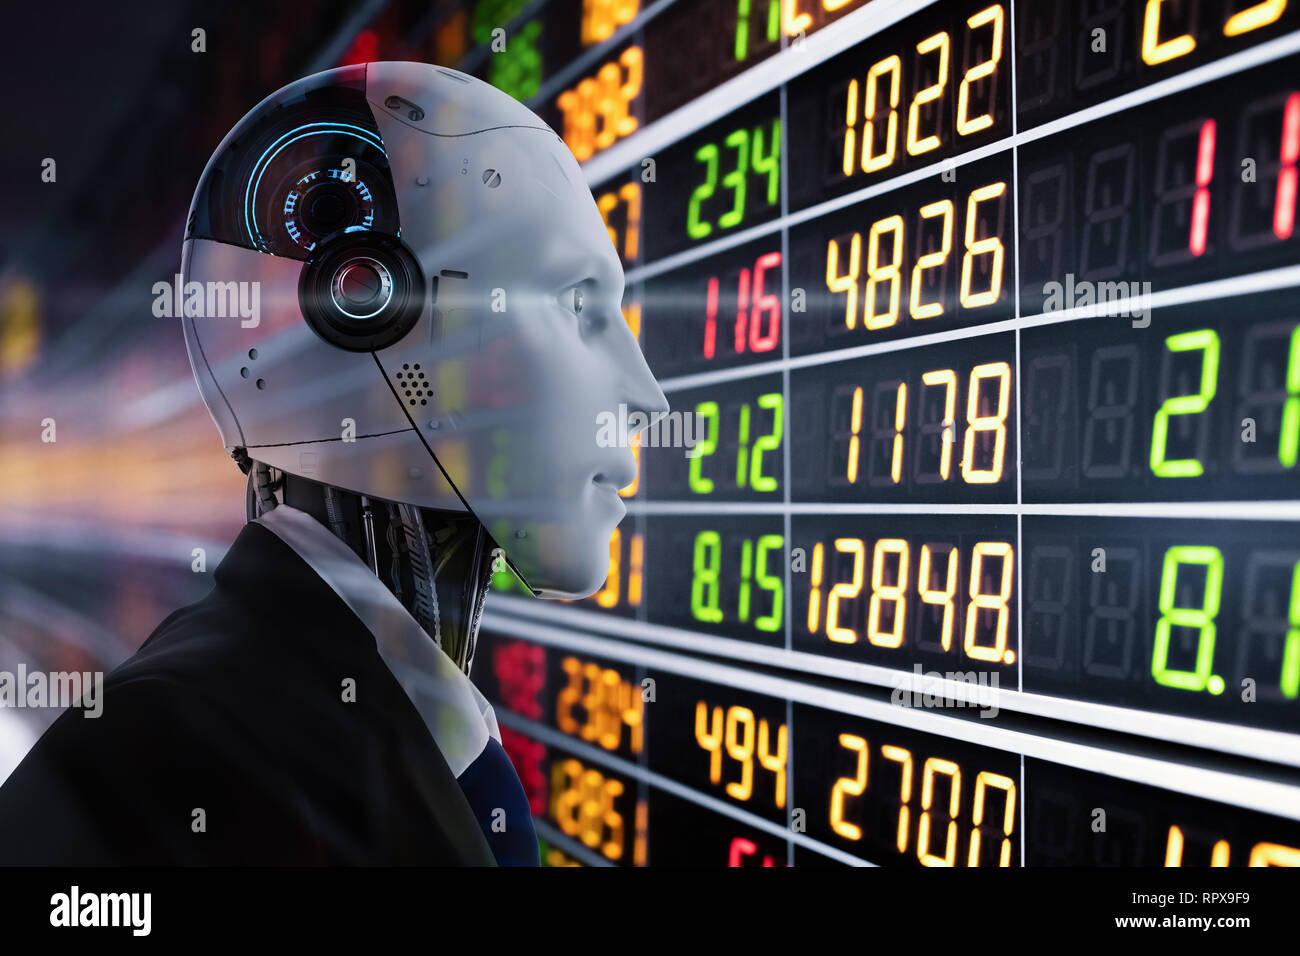 Technologie concept financier avec rendu 3D robot humanoïde analyser stock market Banque D'Images